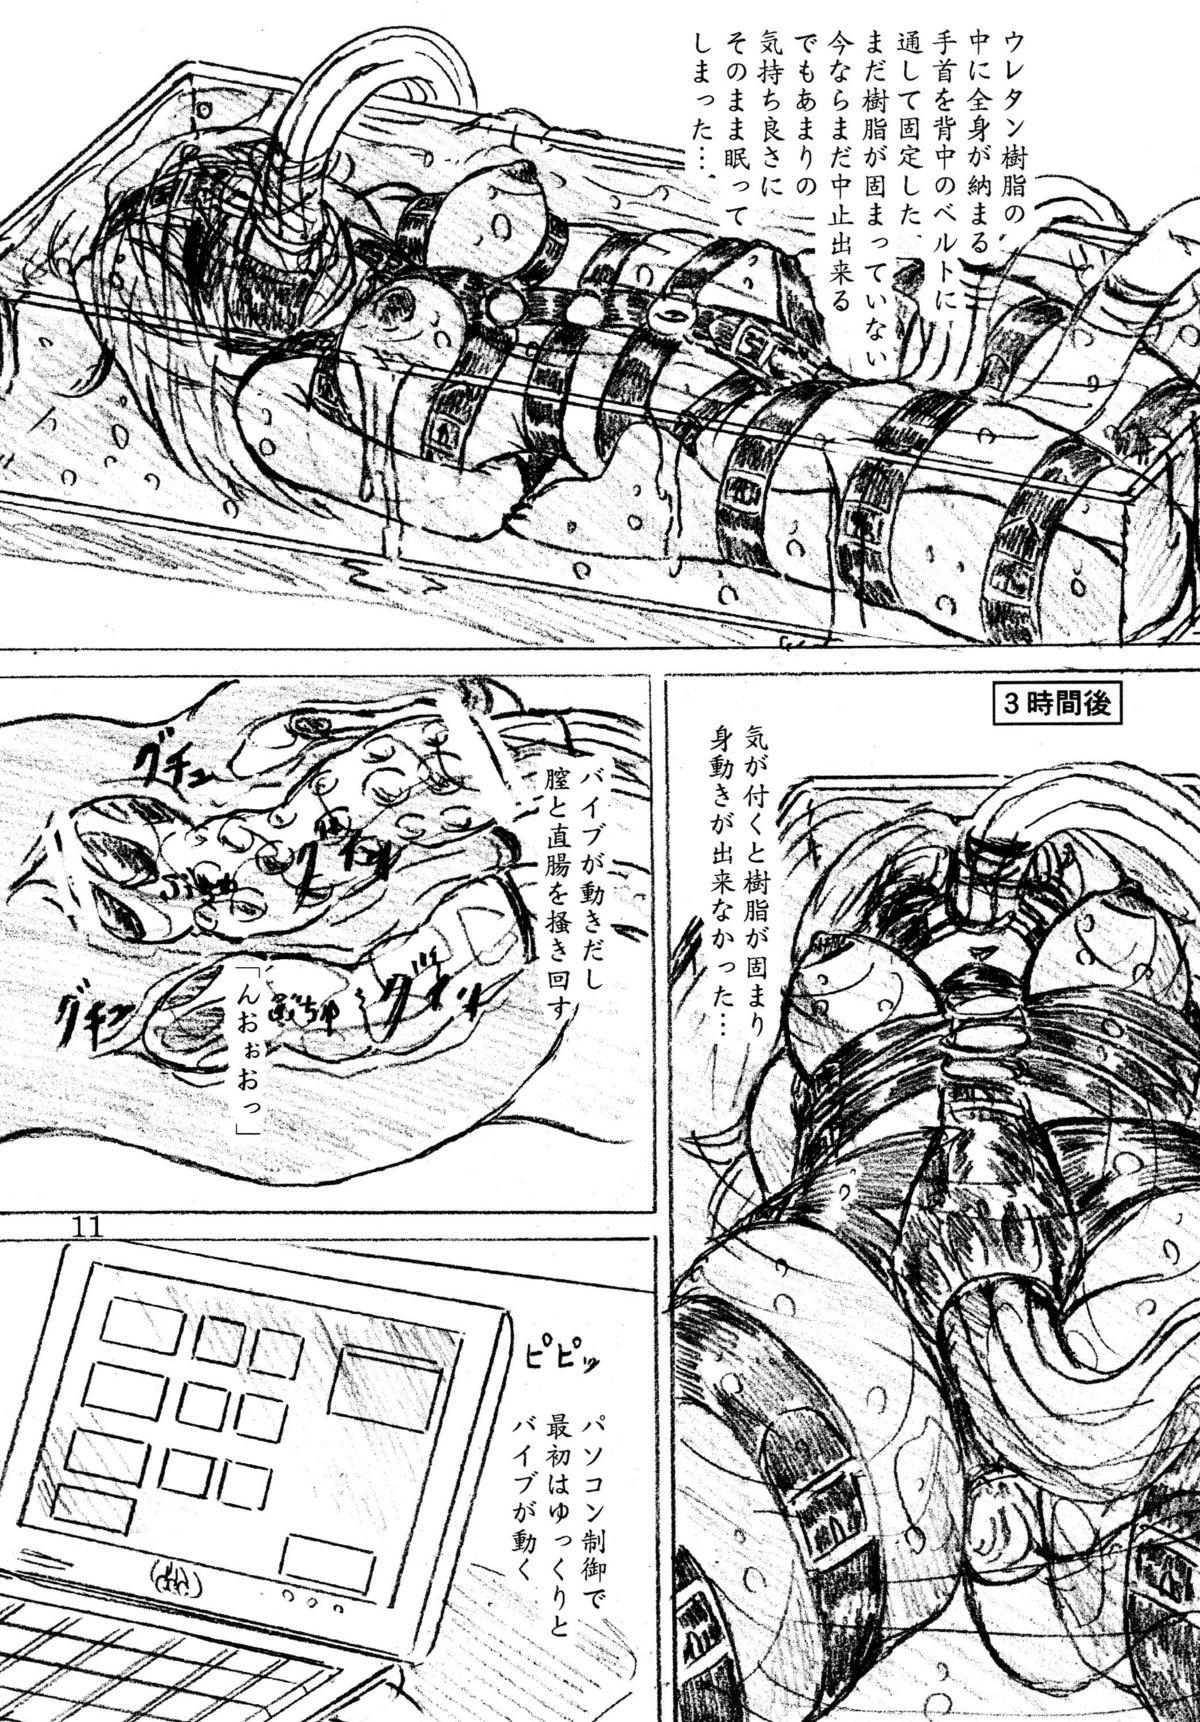 Weird Jibaku-hime + Osorubeshi Kikai no Pantsu Ano - Page 11